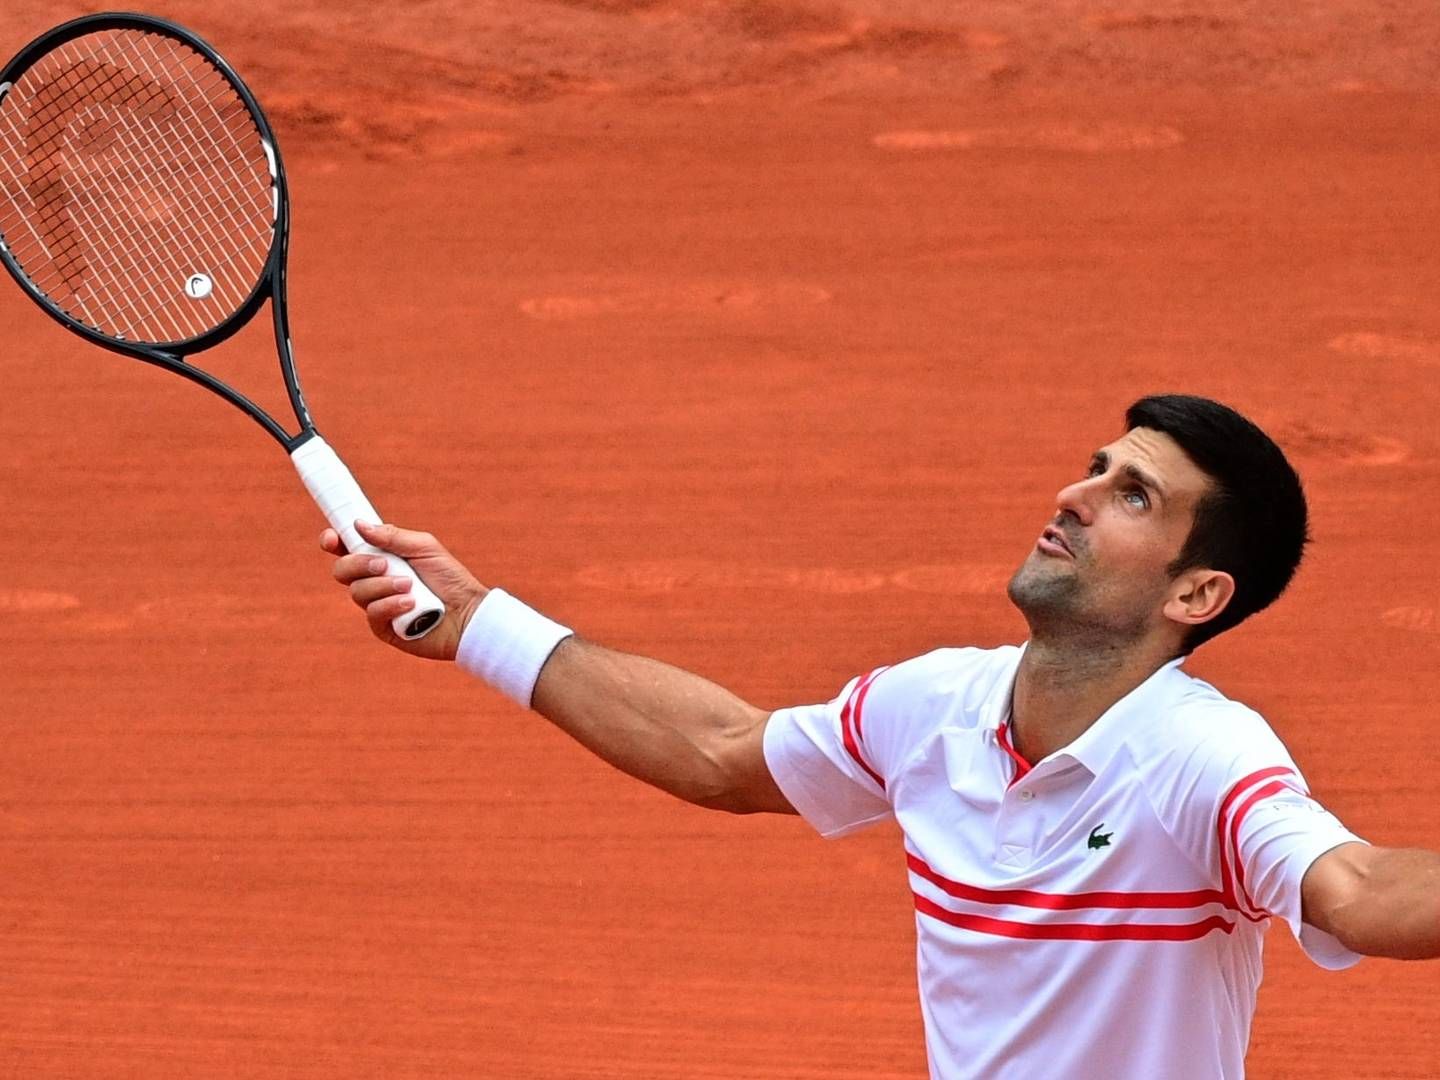 Verdensetteren i tennis, Novak Djokovic, har købt majoriteen af dansk coronaselskab. | Foto: MARTIN BUREAU/AFP / AFP